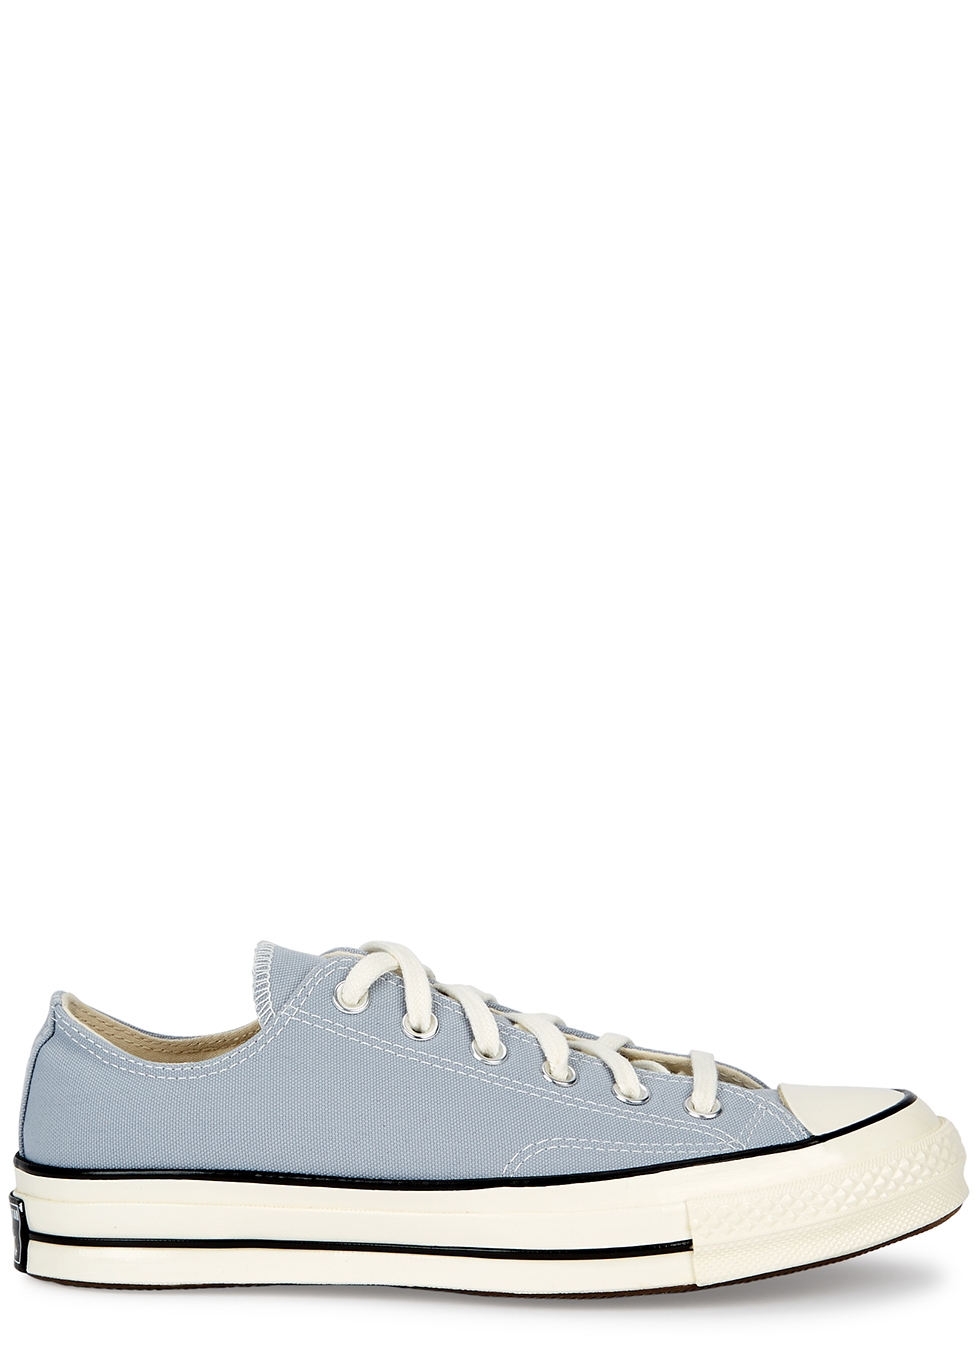 Converse 70 grey canvas sneakers 